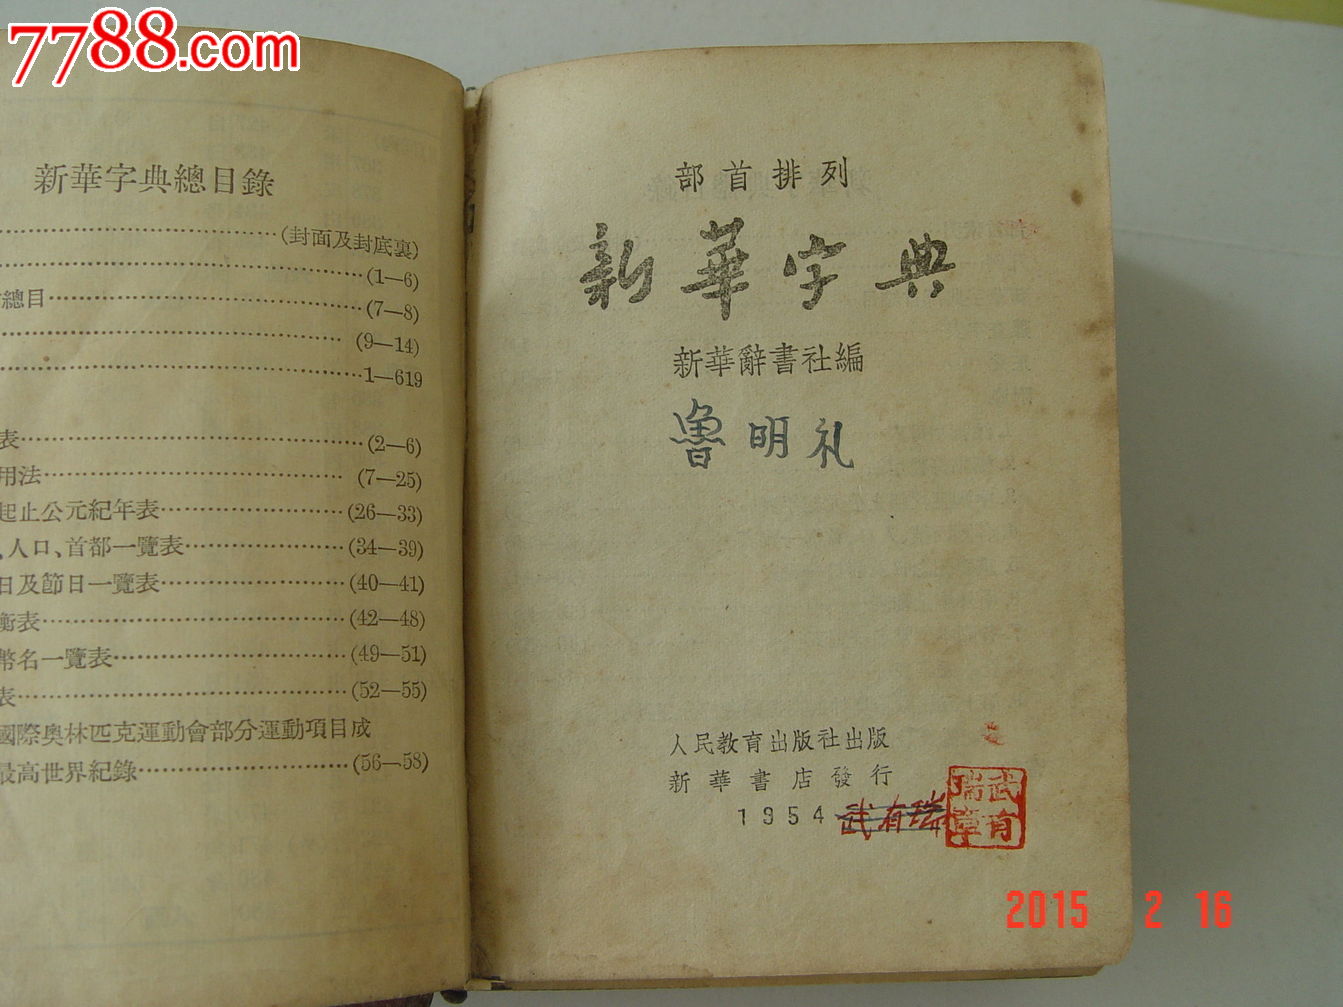 新华字典,字典\/辞典,现代汉语字典\/辞典,五十年